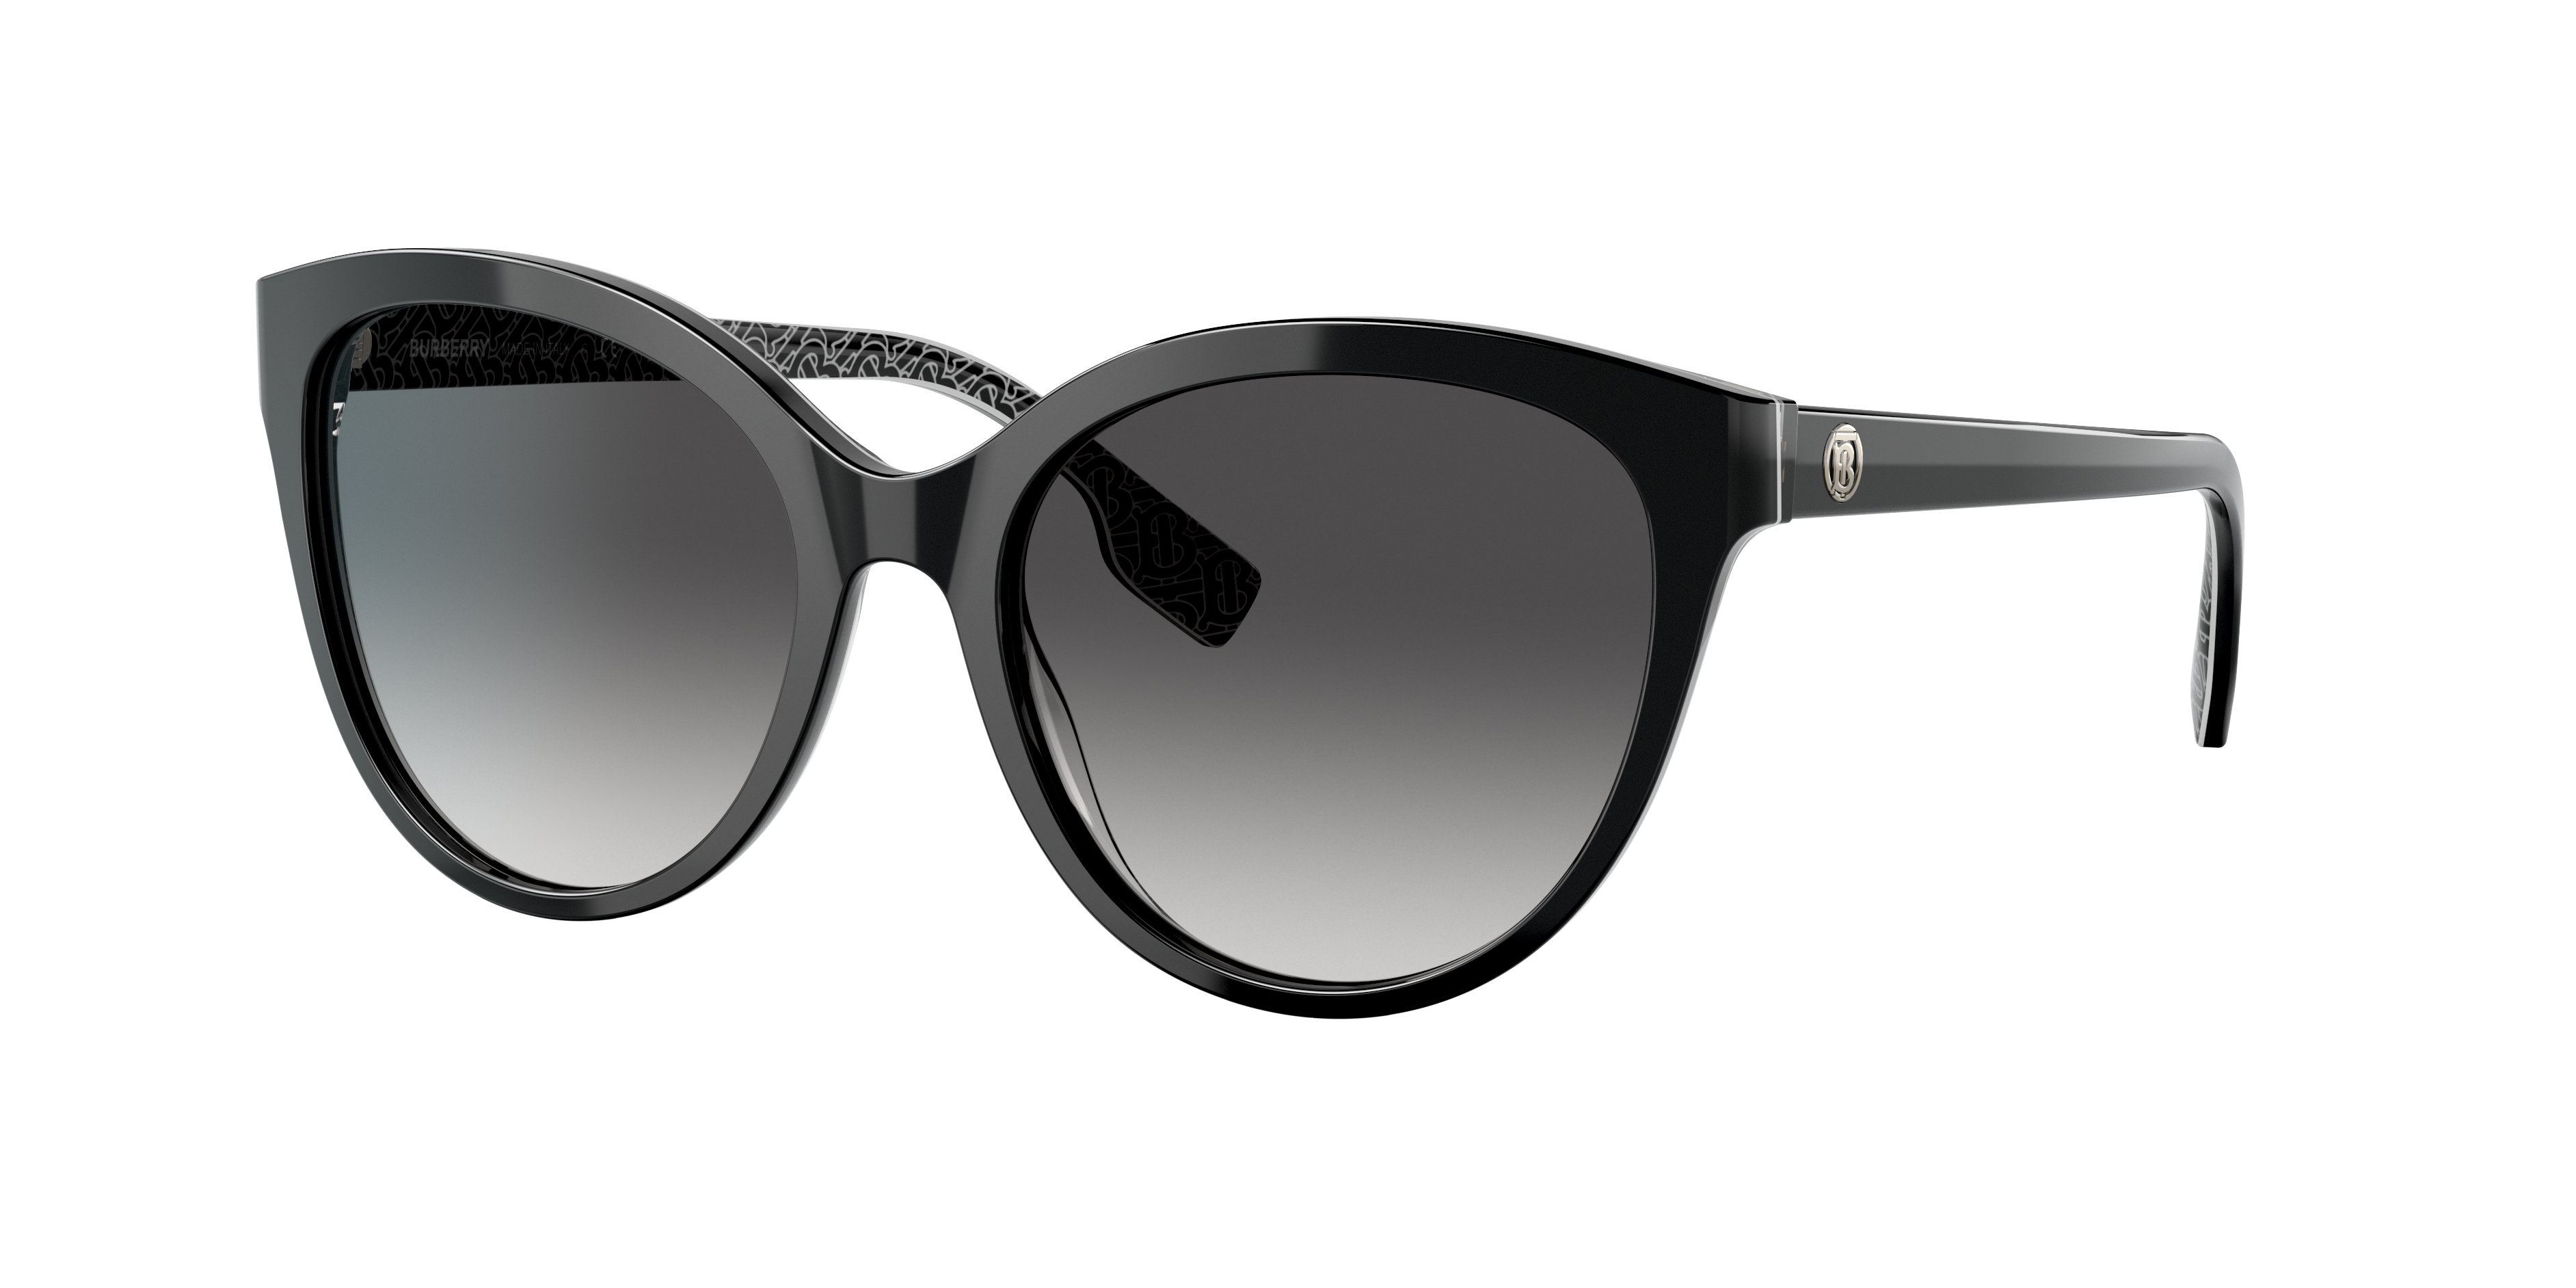 Consulte nosso catálogo de Óculos de Sol Burberry Eyewear com diversos modelos e preços para sua escolha.